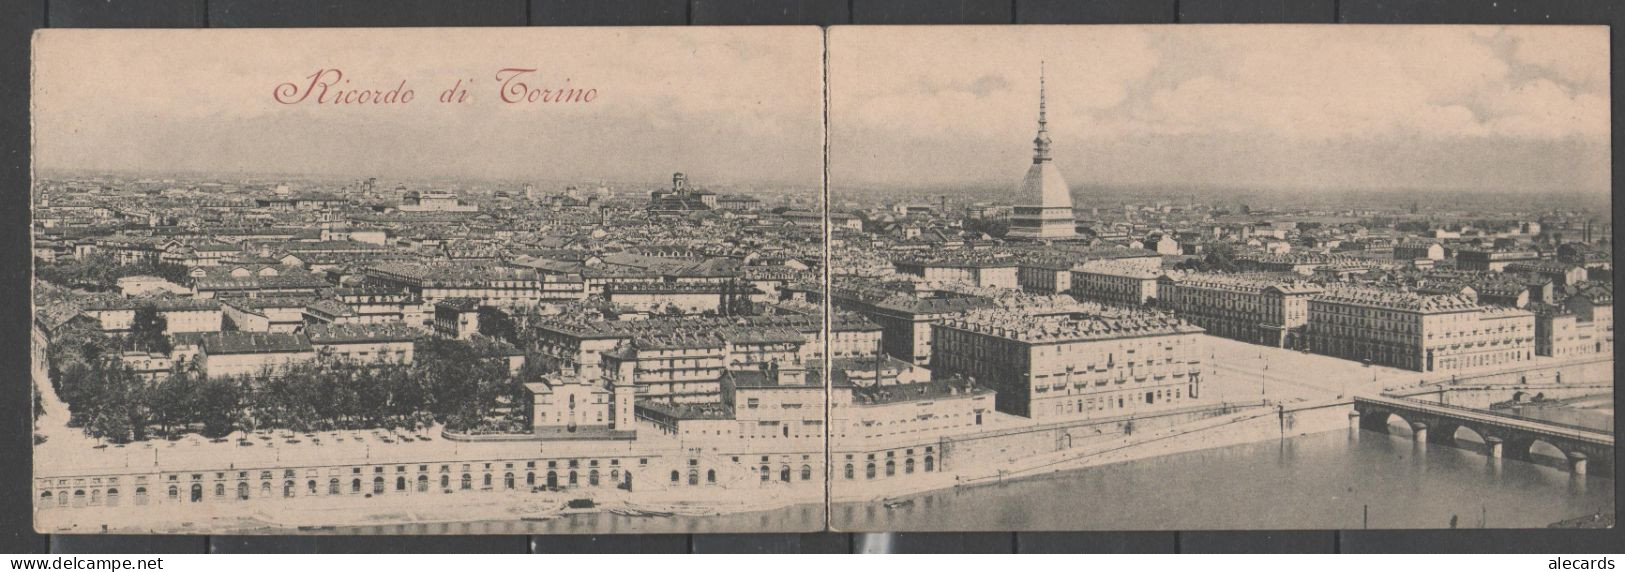 Torino - Ricordo - Panorama - Mehransichten, Panoramakarten